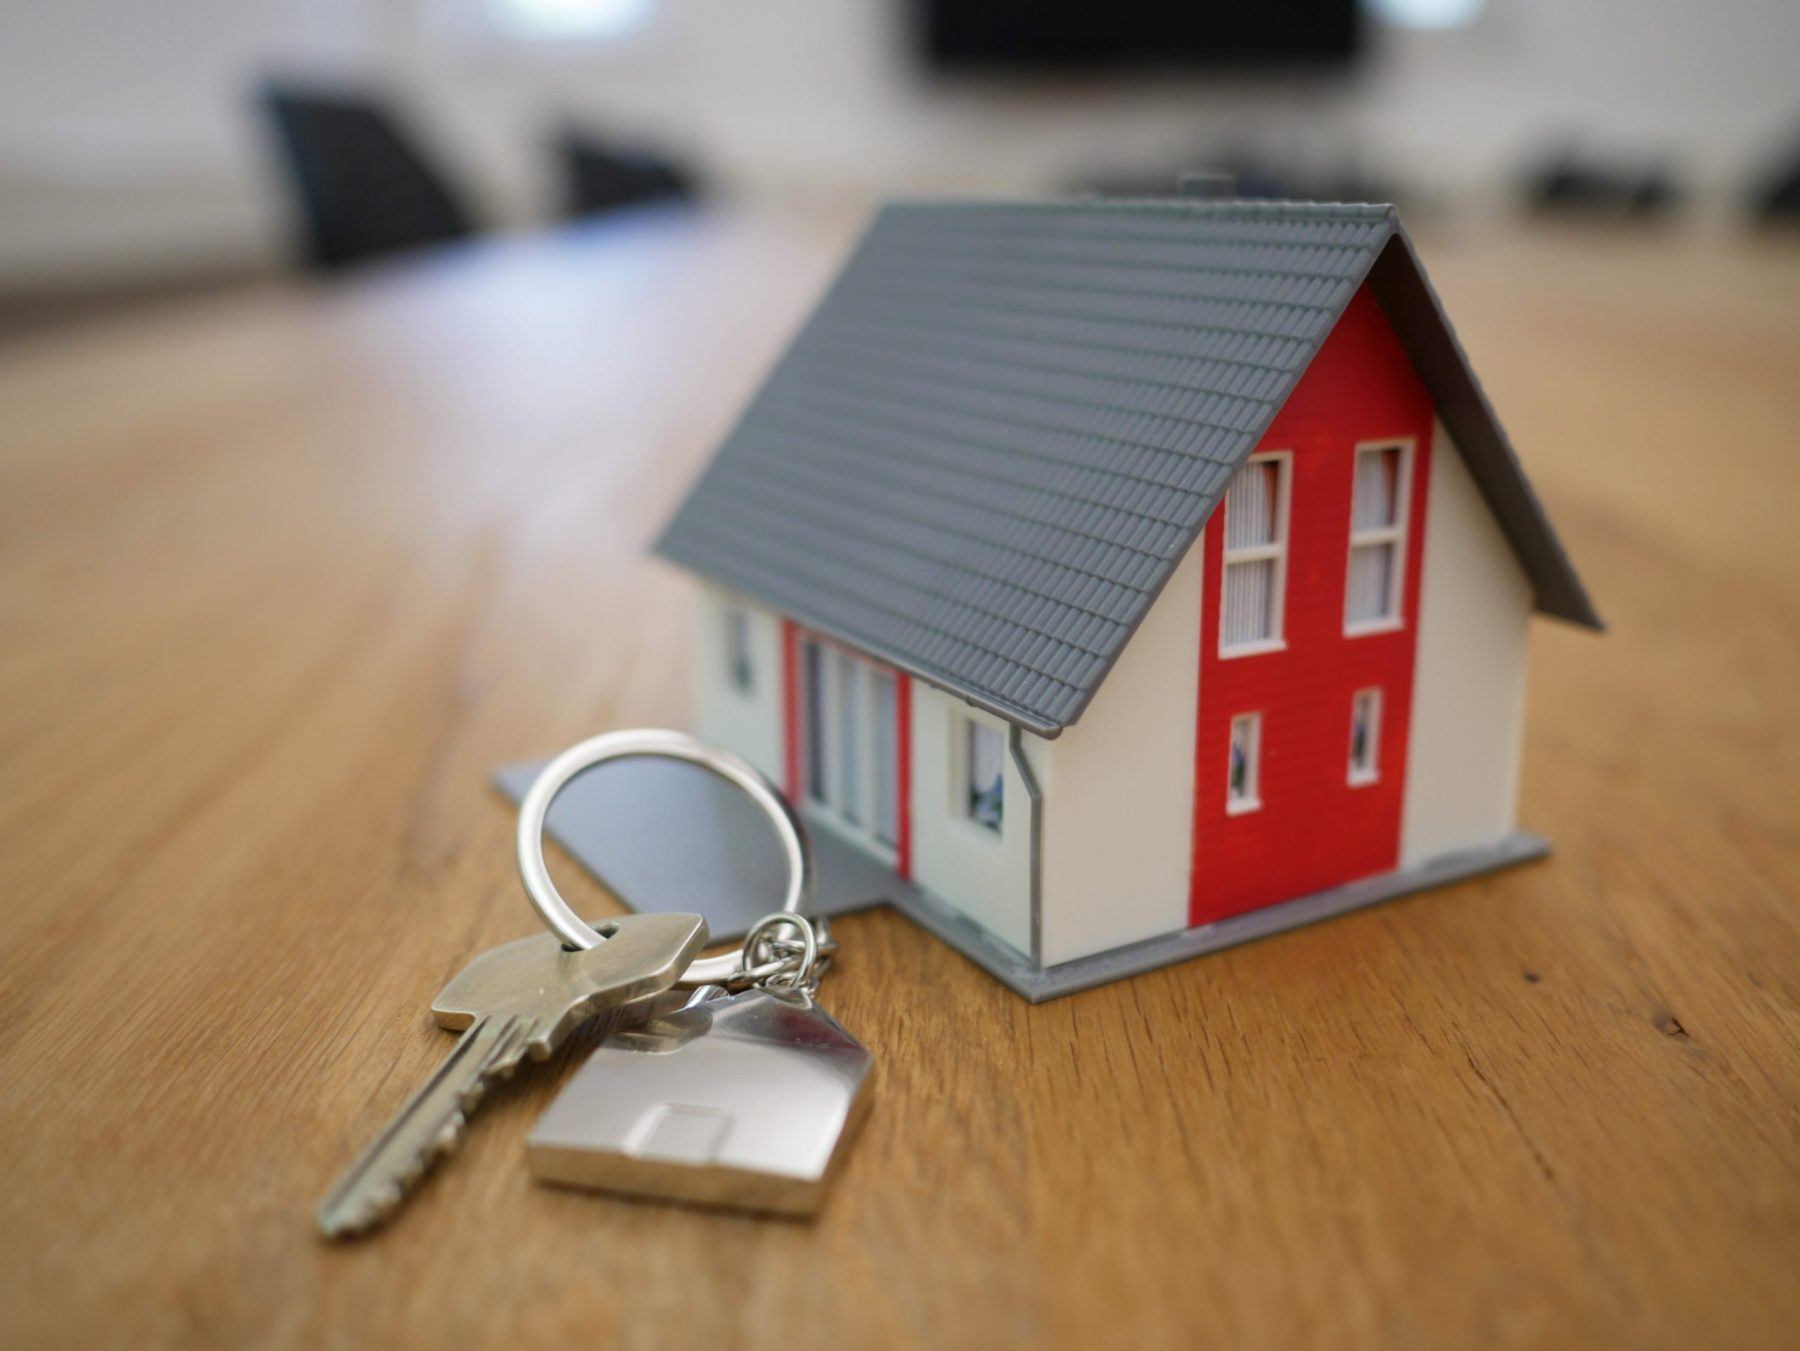 Tiny House and Keys